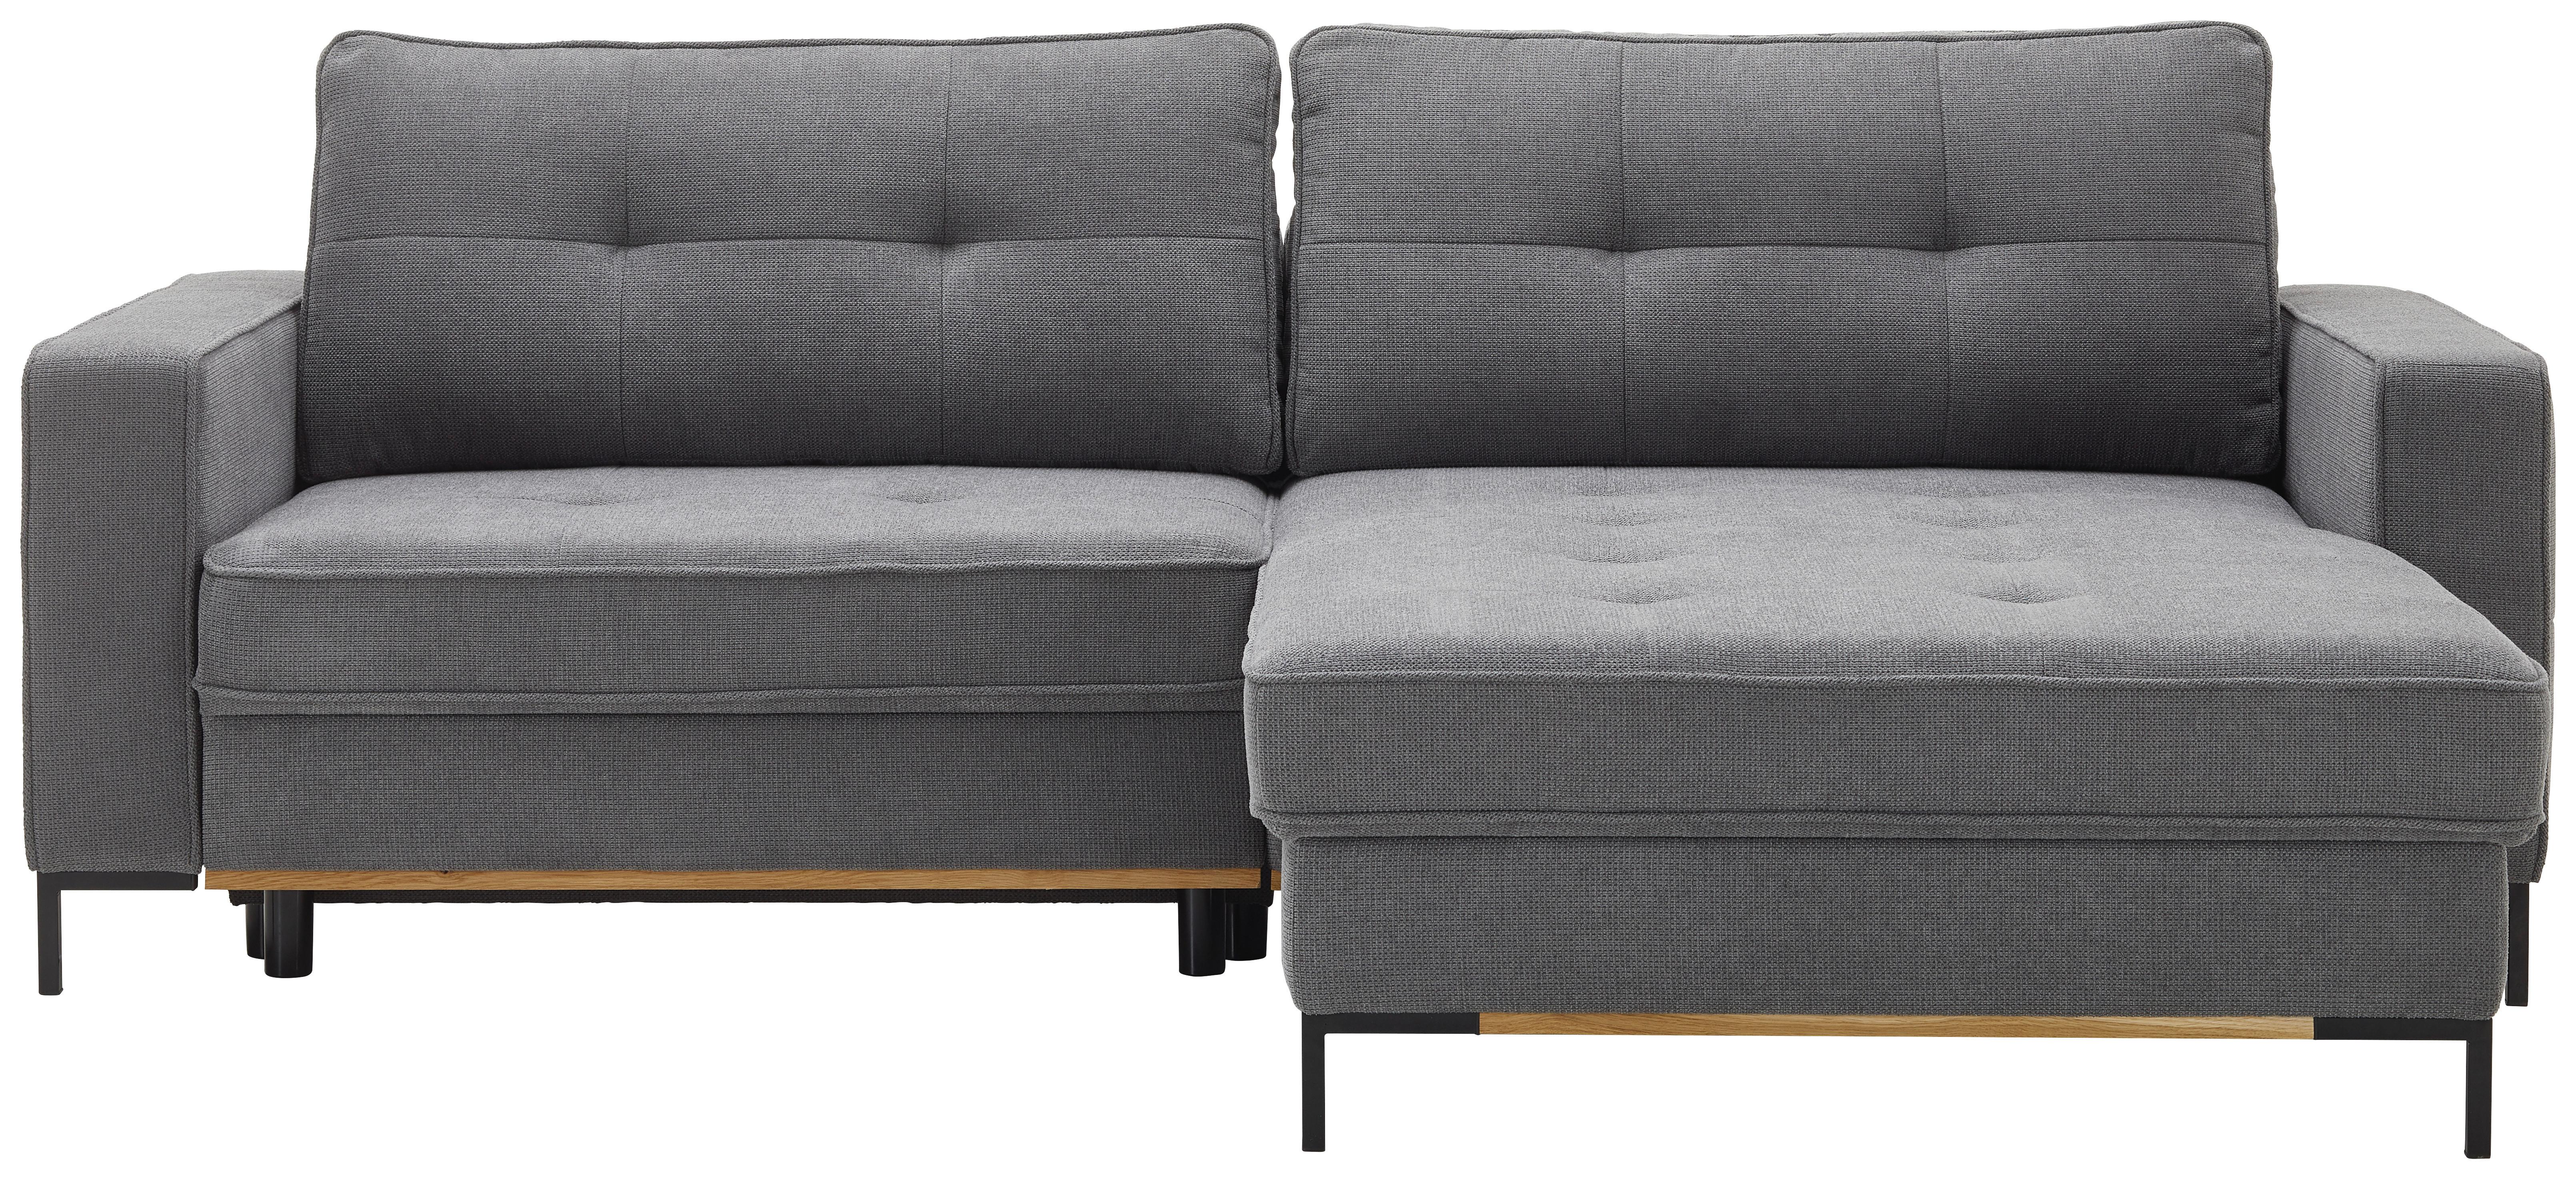 Sedežna Garnitura Miami - siva/črna, Moderno, kovina/umetna masa (240/86/166cm) - Modern Living